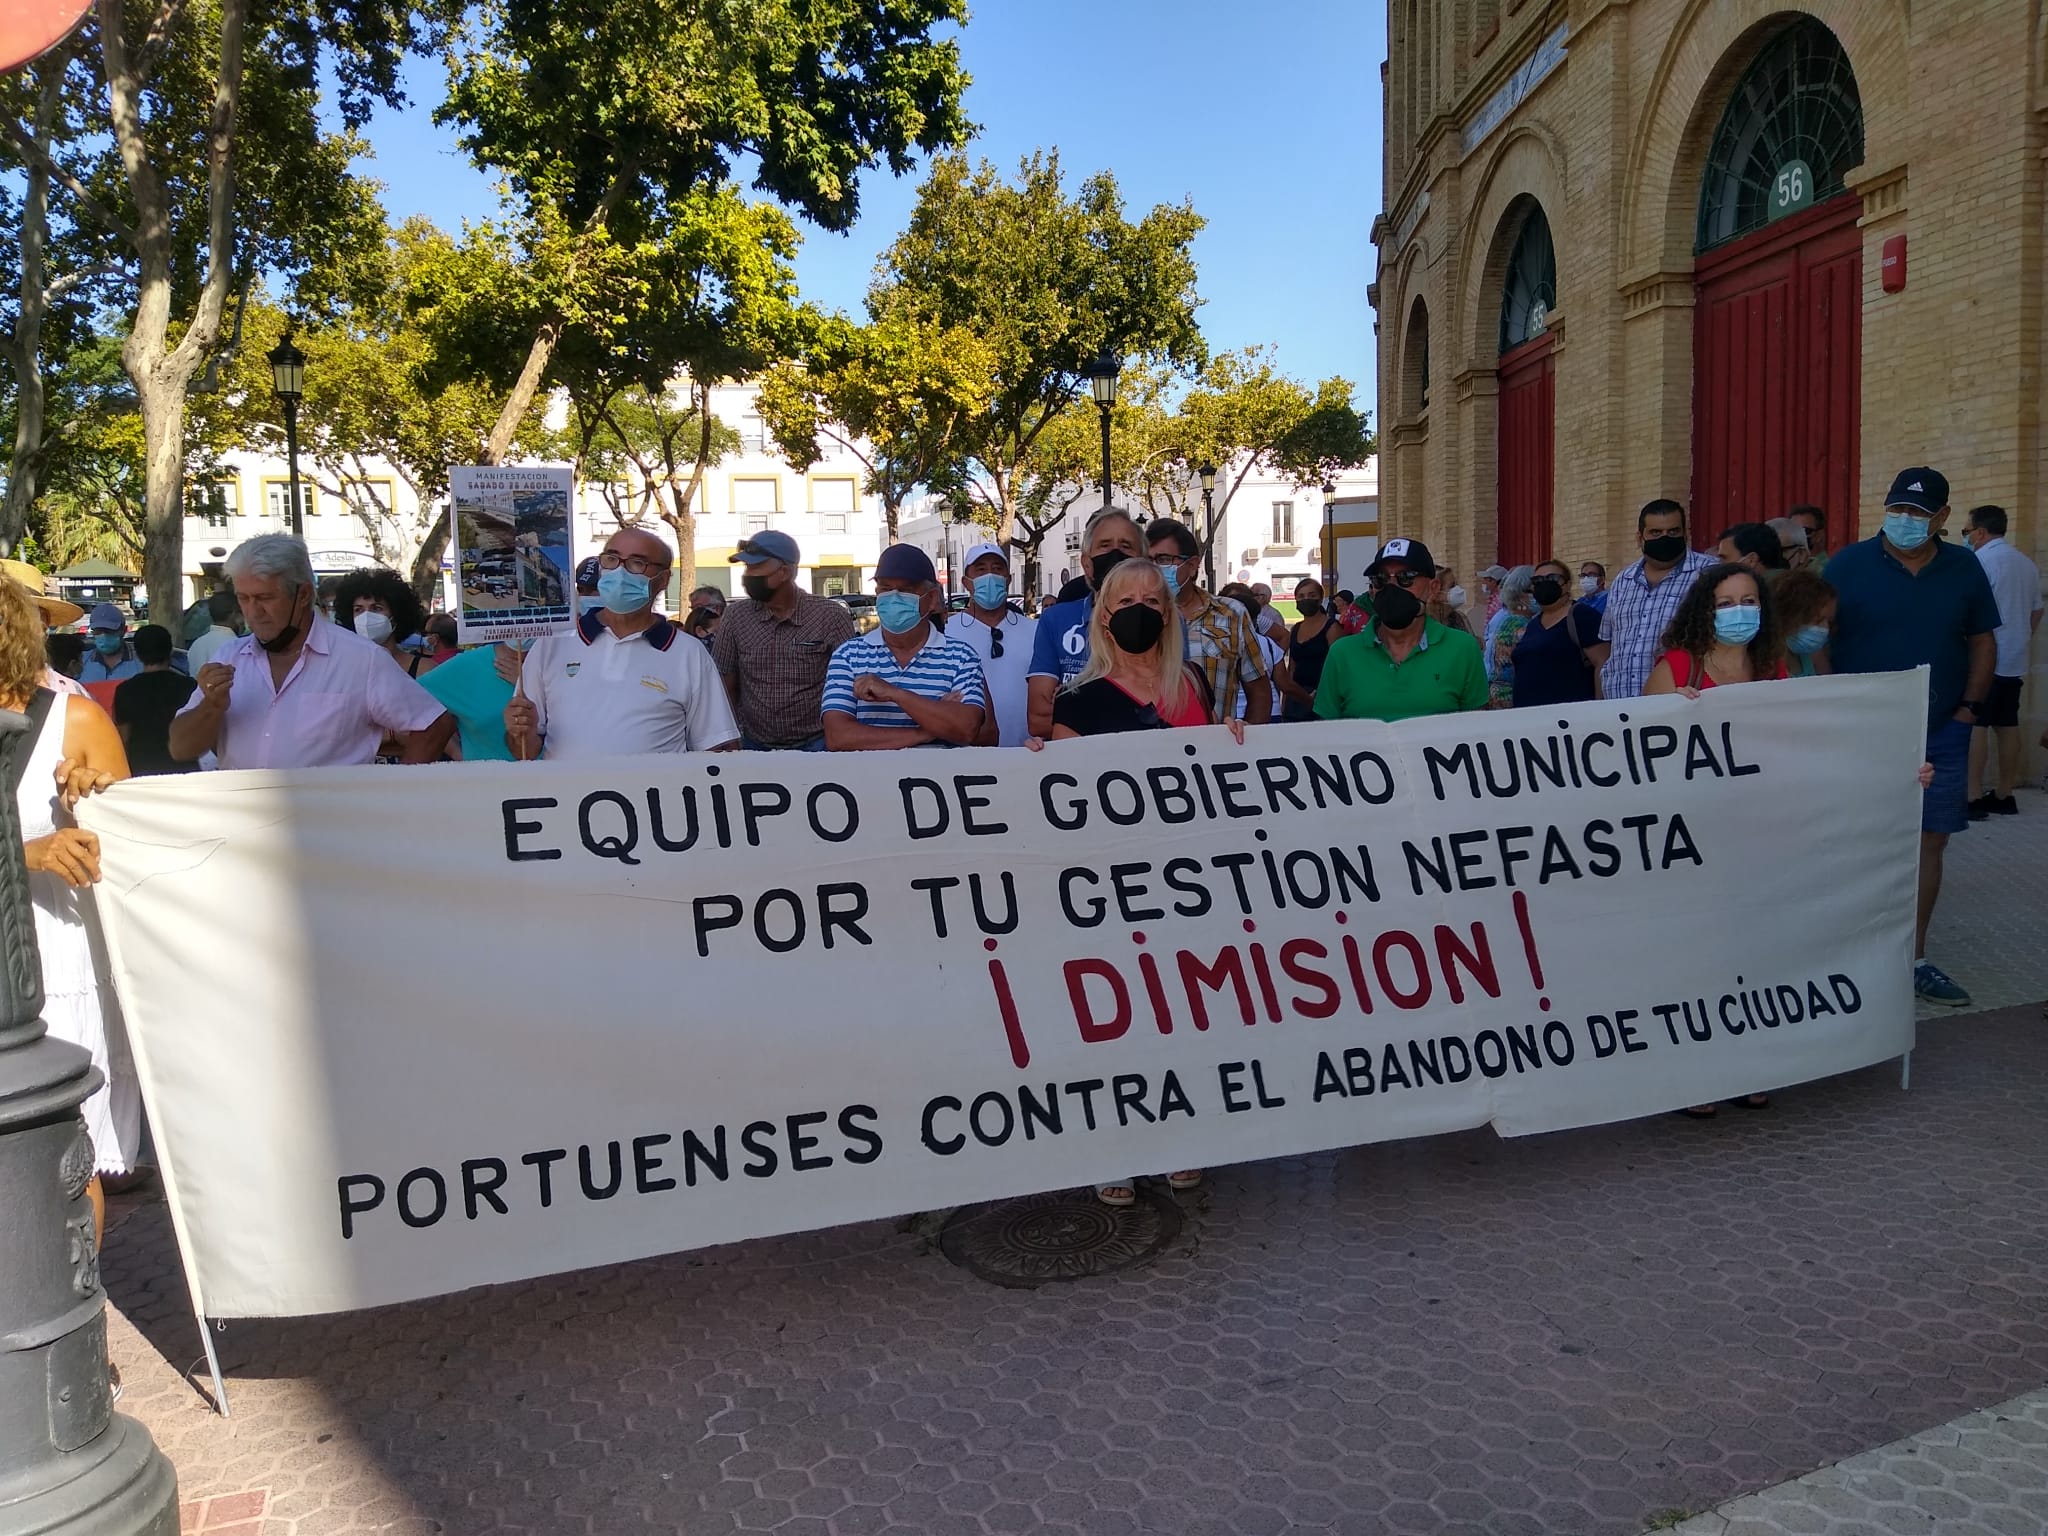 Manifestación contra el abandono de la ciudad en la plaza de toros de El Puerto.